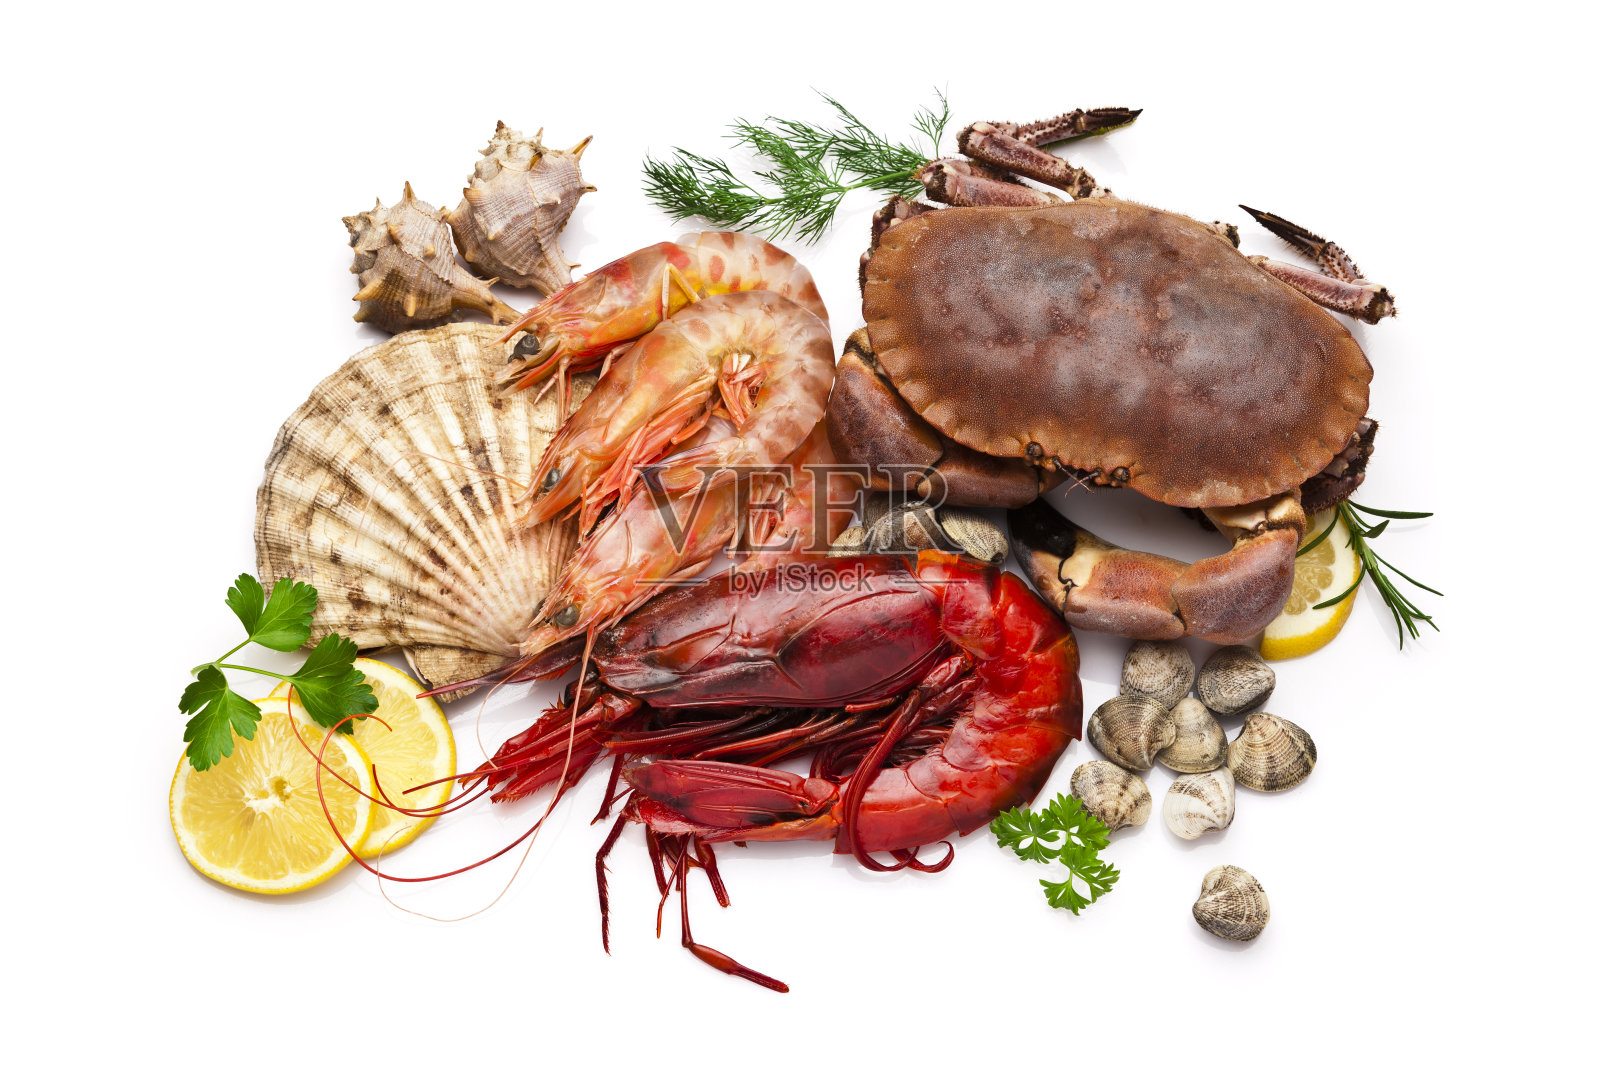 海鲜:蛤、扇贝、对虾、虾、蟹照片摄影图片